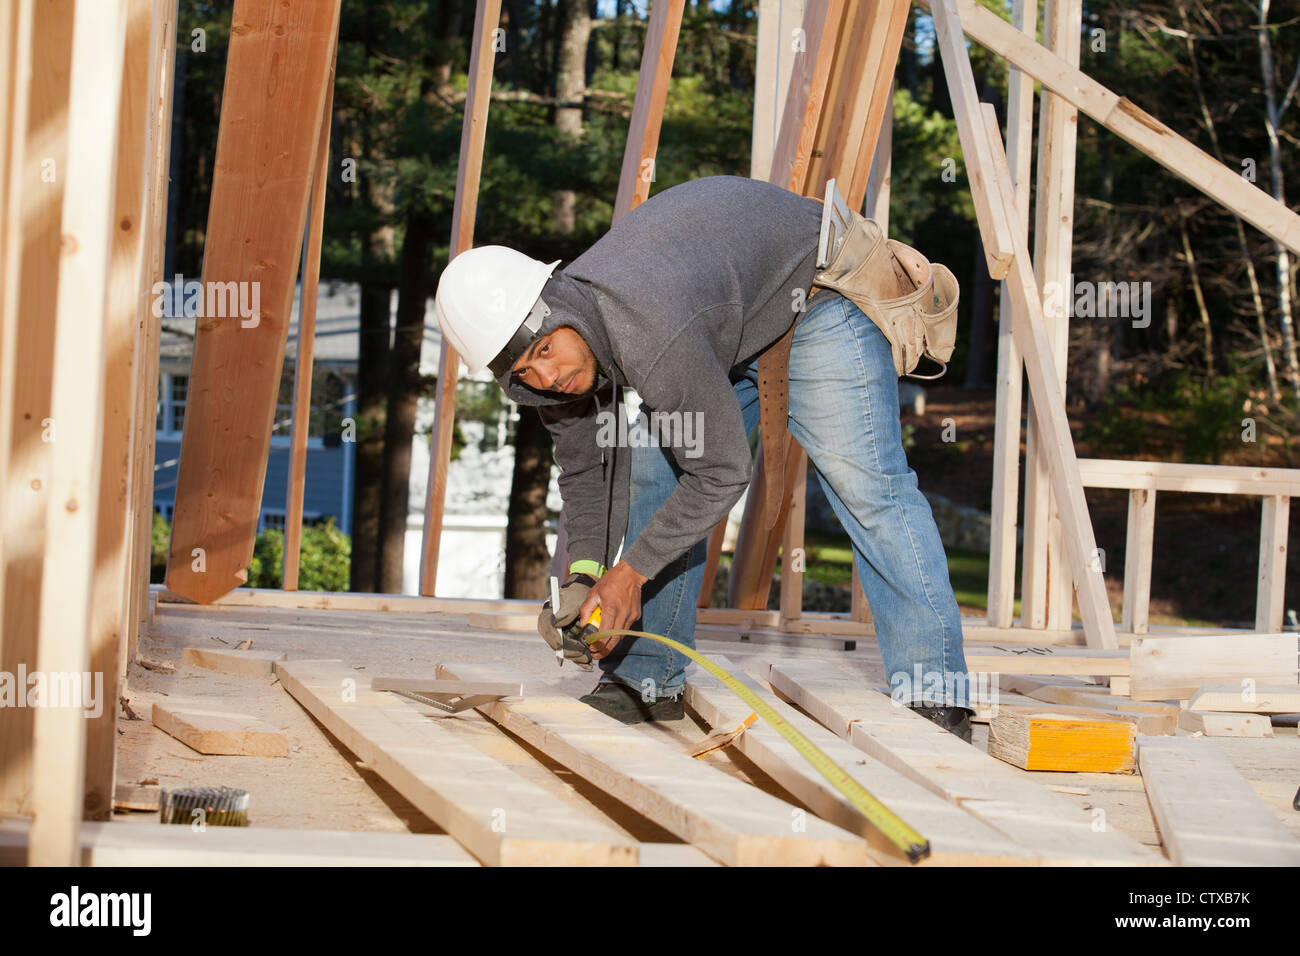 Carpenter measuring board length Stock Photo